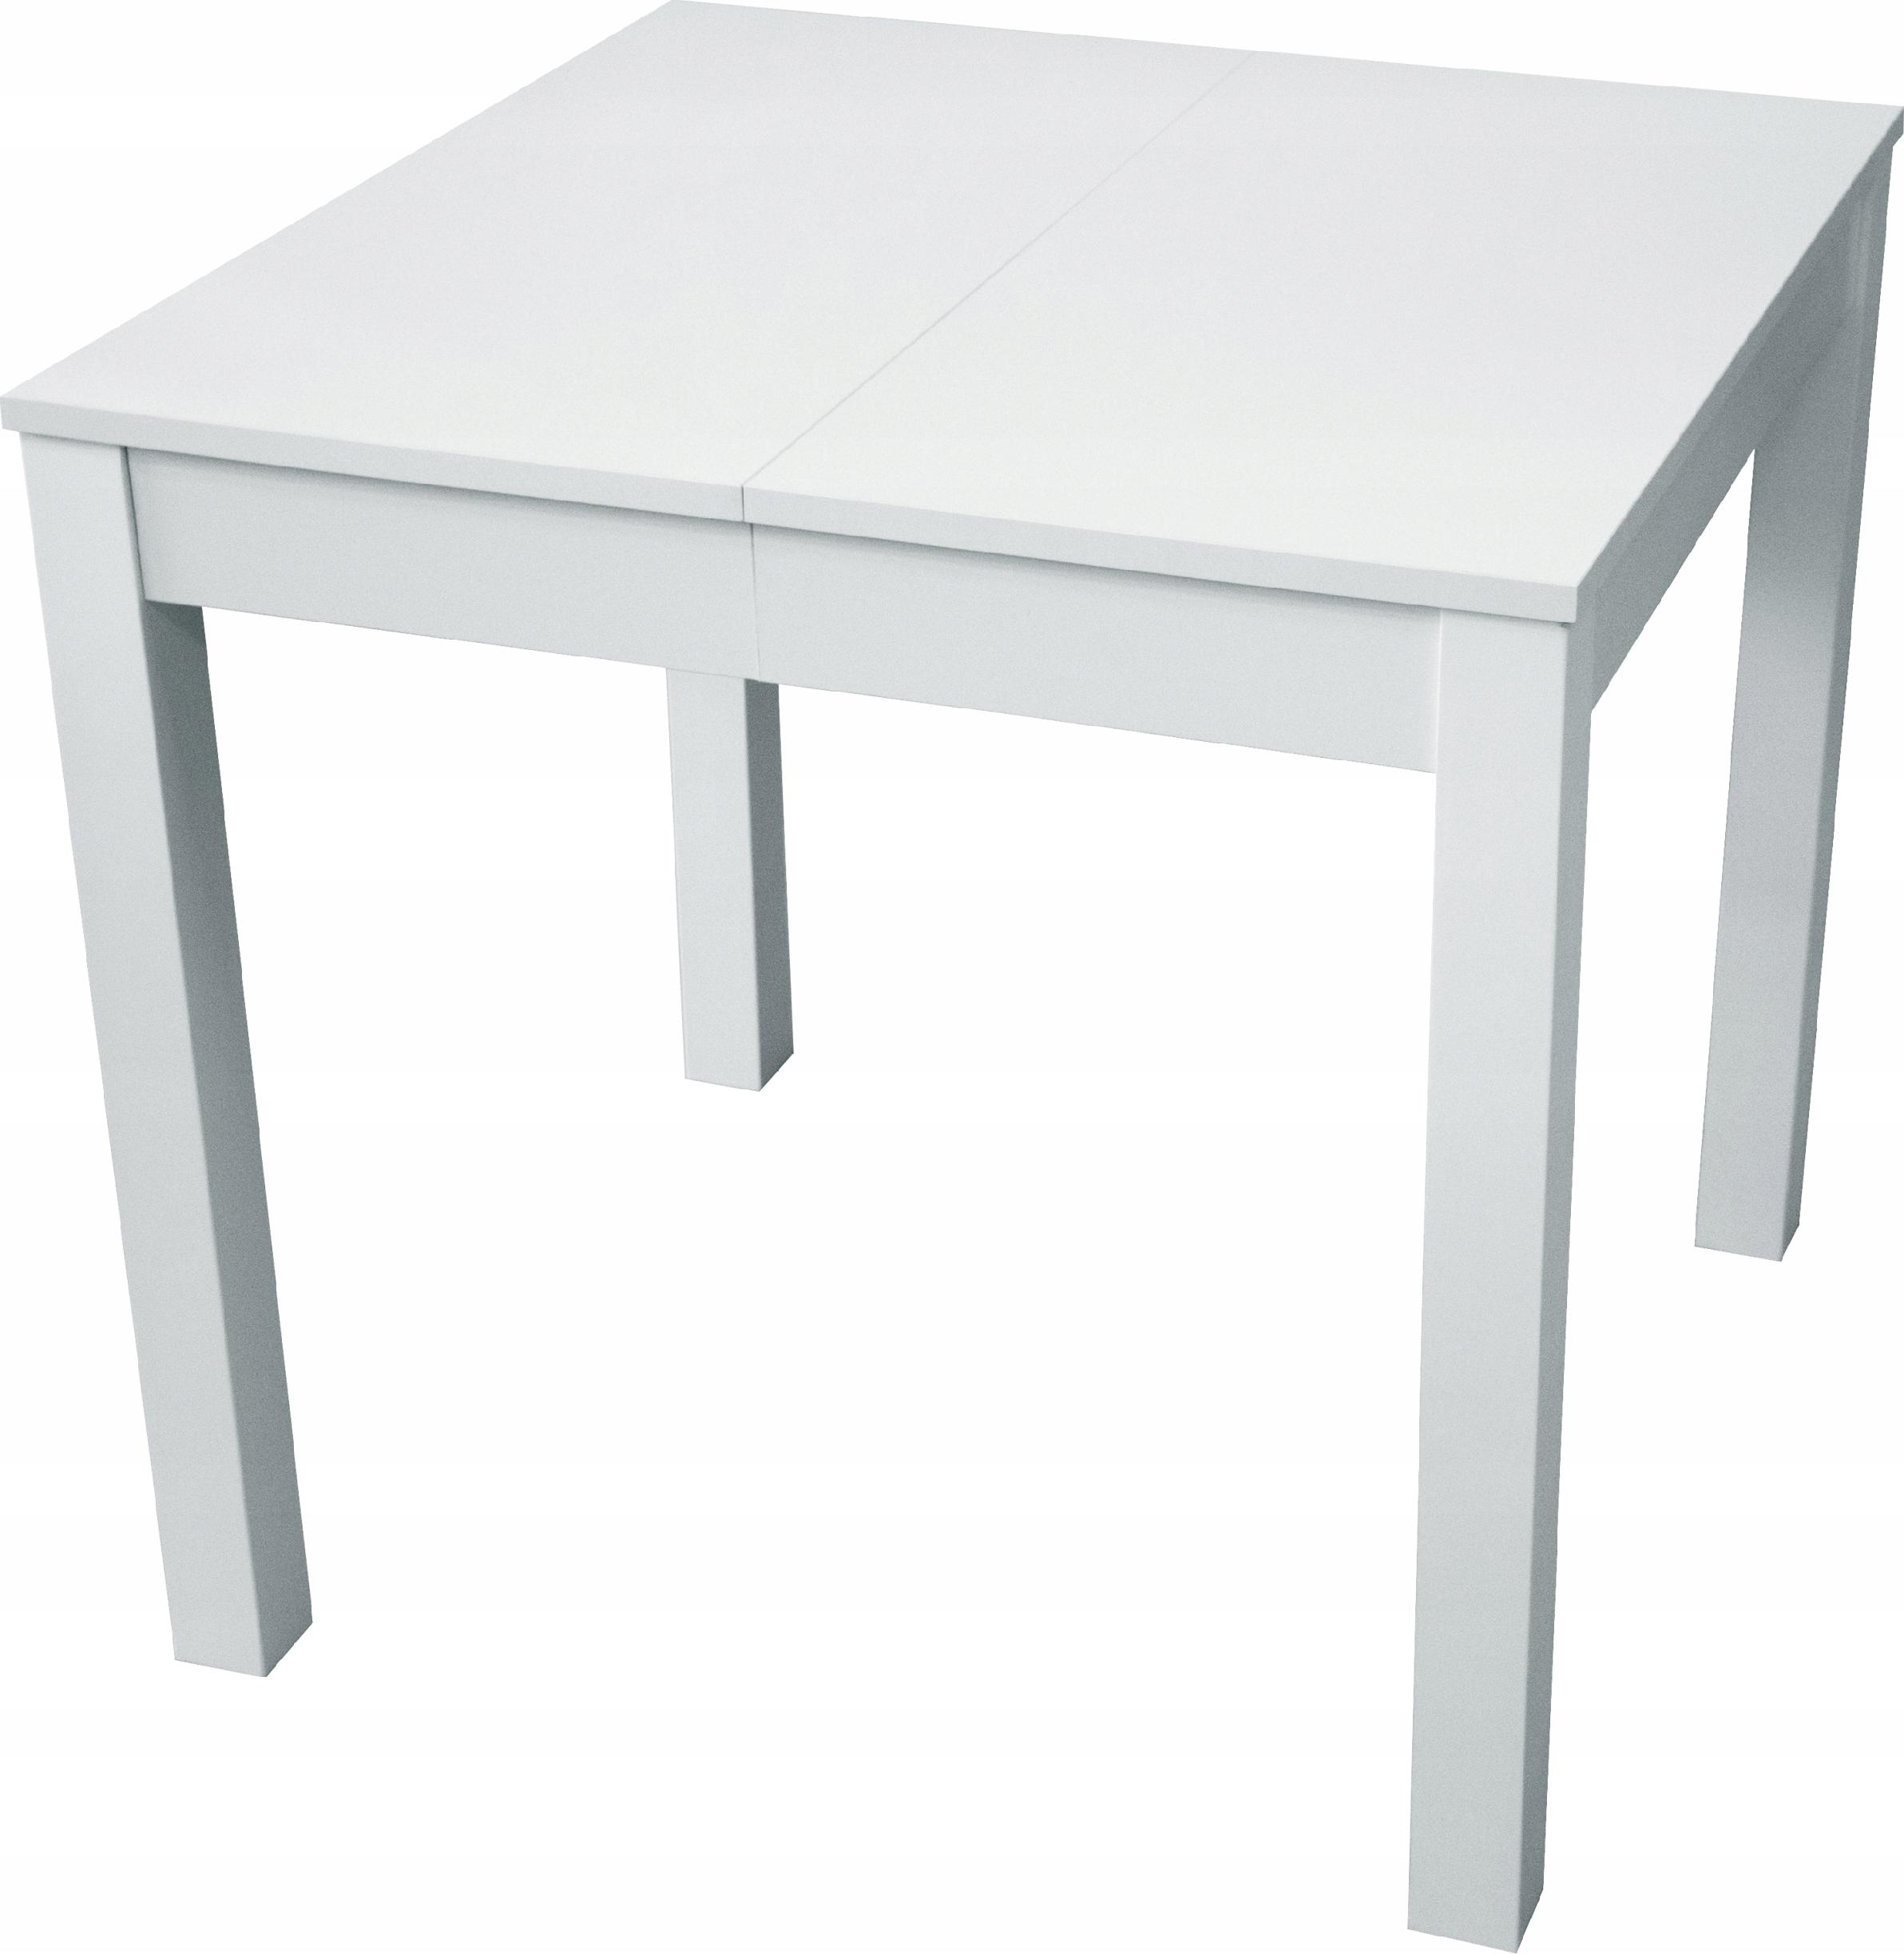 Stół rozkładany biały 90x90-225cm PROMOCJA NOWOŚĆ - 802 zł - Allegro.pl -  Raty 0%, Darmowa dostawa ze Smart! - Radomsko - Stan: nowy - ID oferty:  10585803997